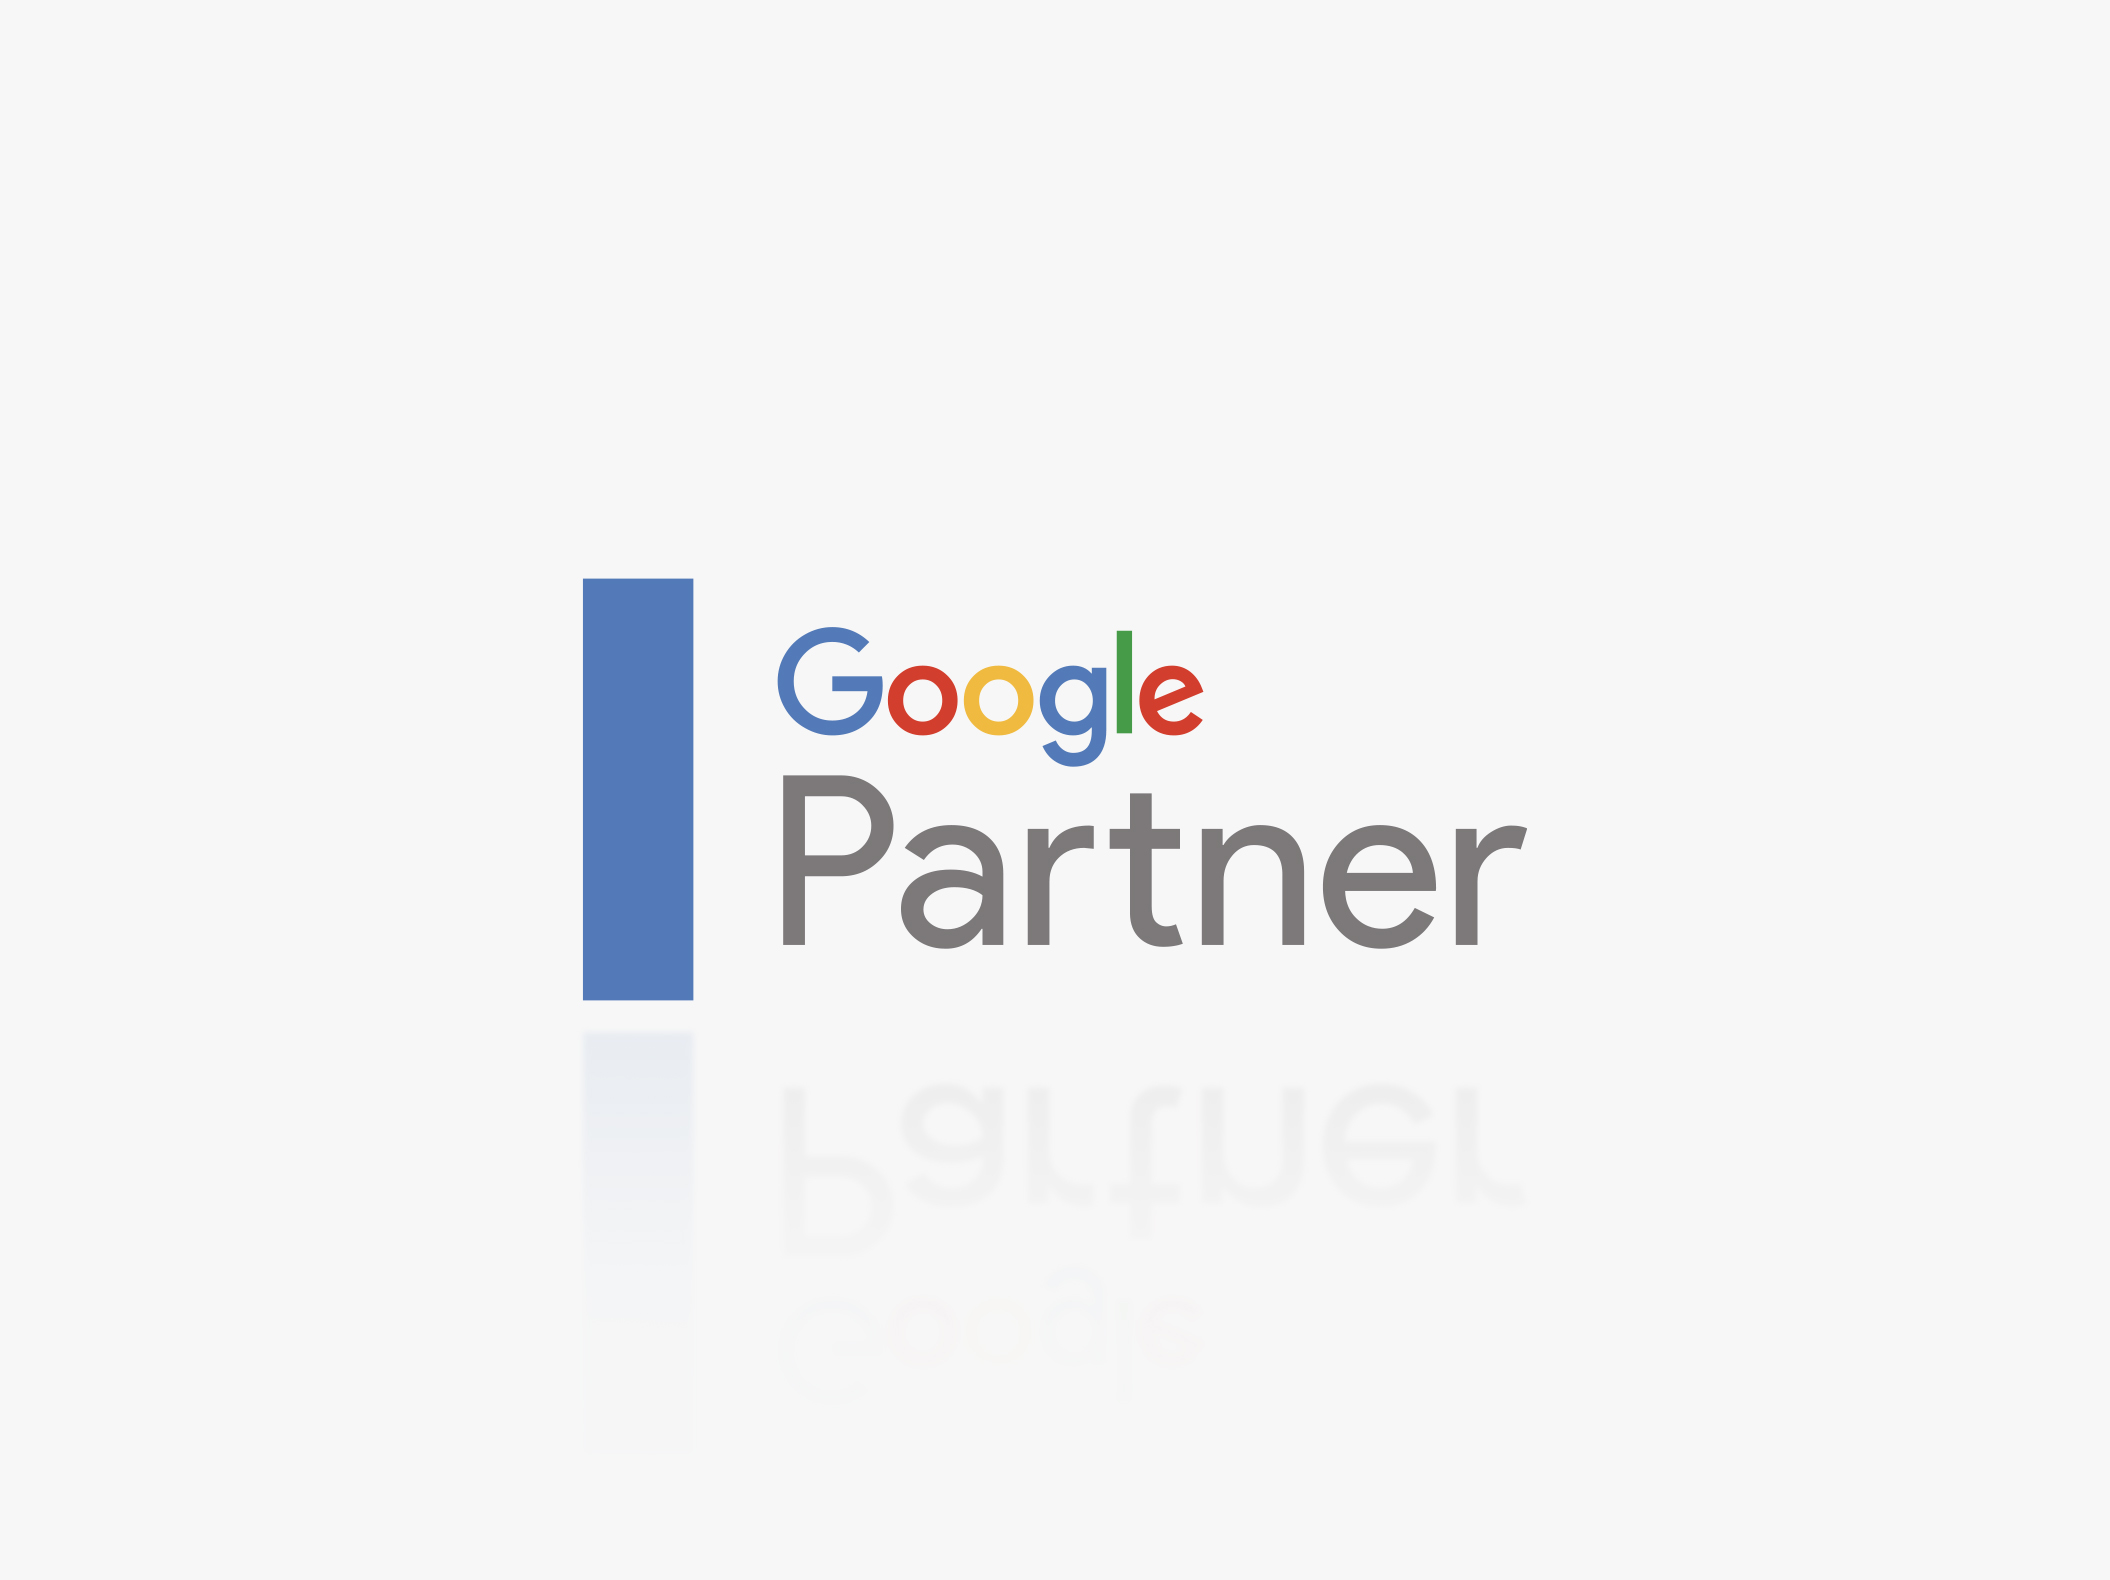 Google Partner - Reech Media